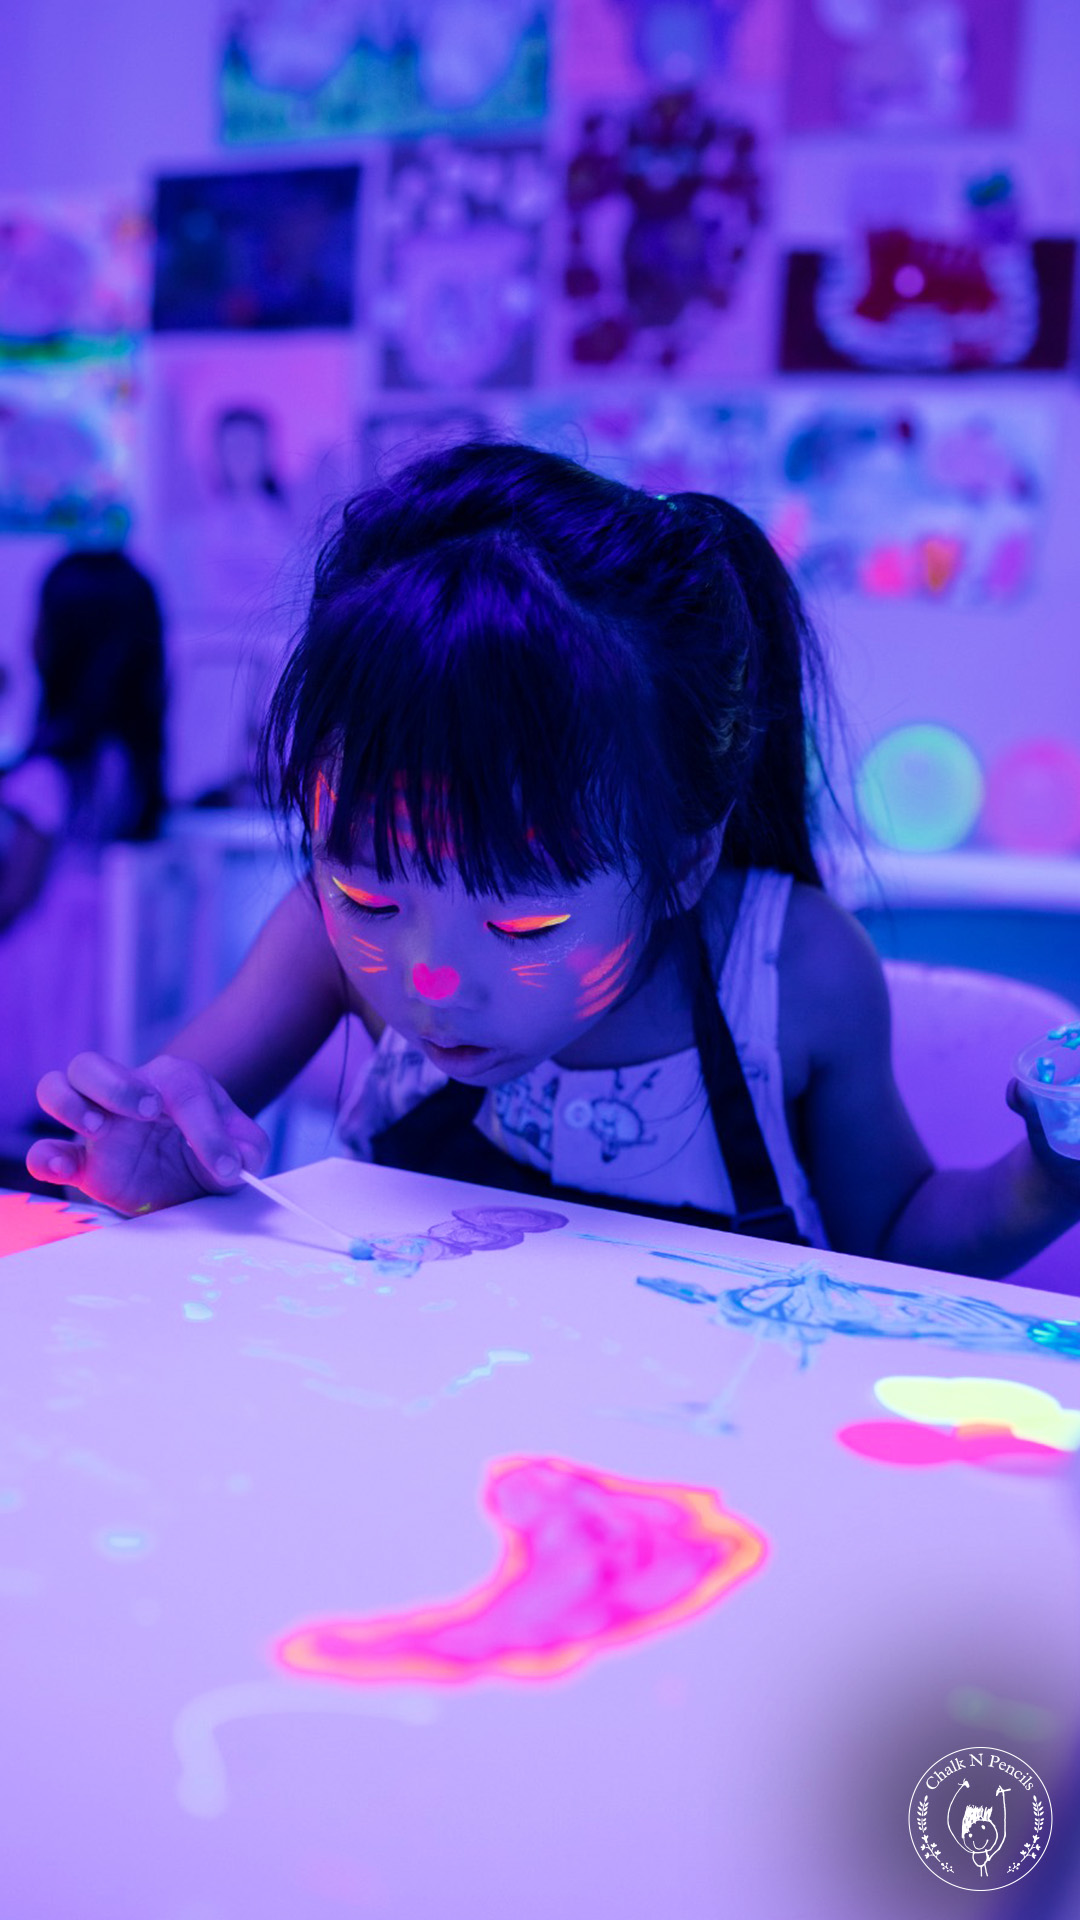 art-birthday-party-children-glowinthedark-chalknpencils-05